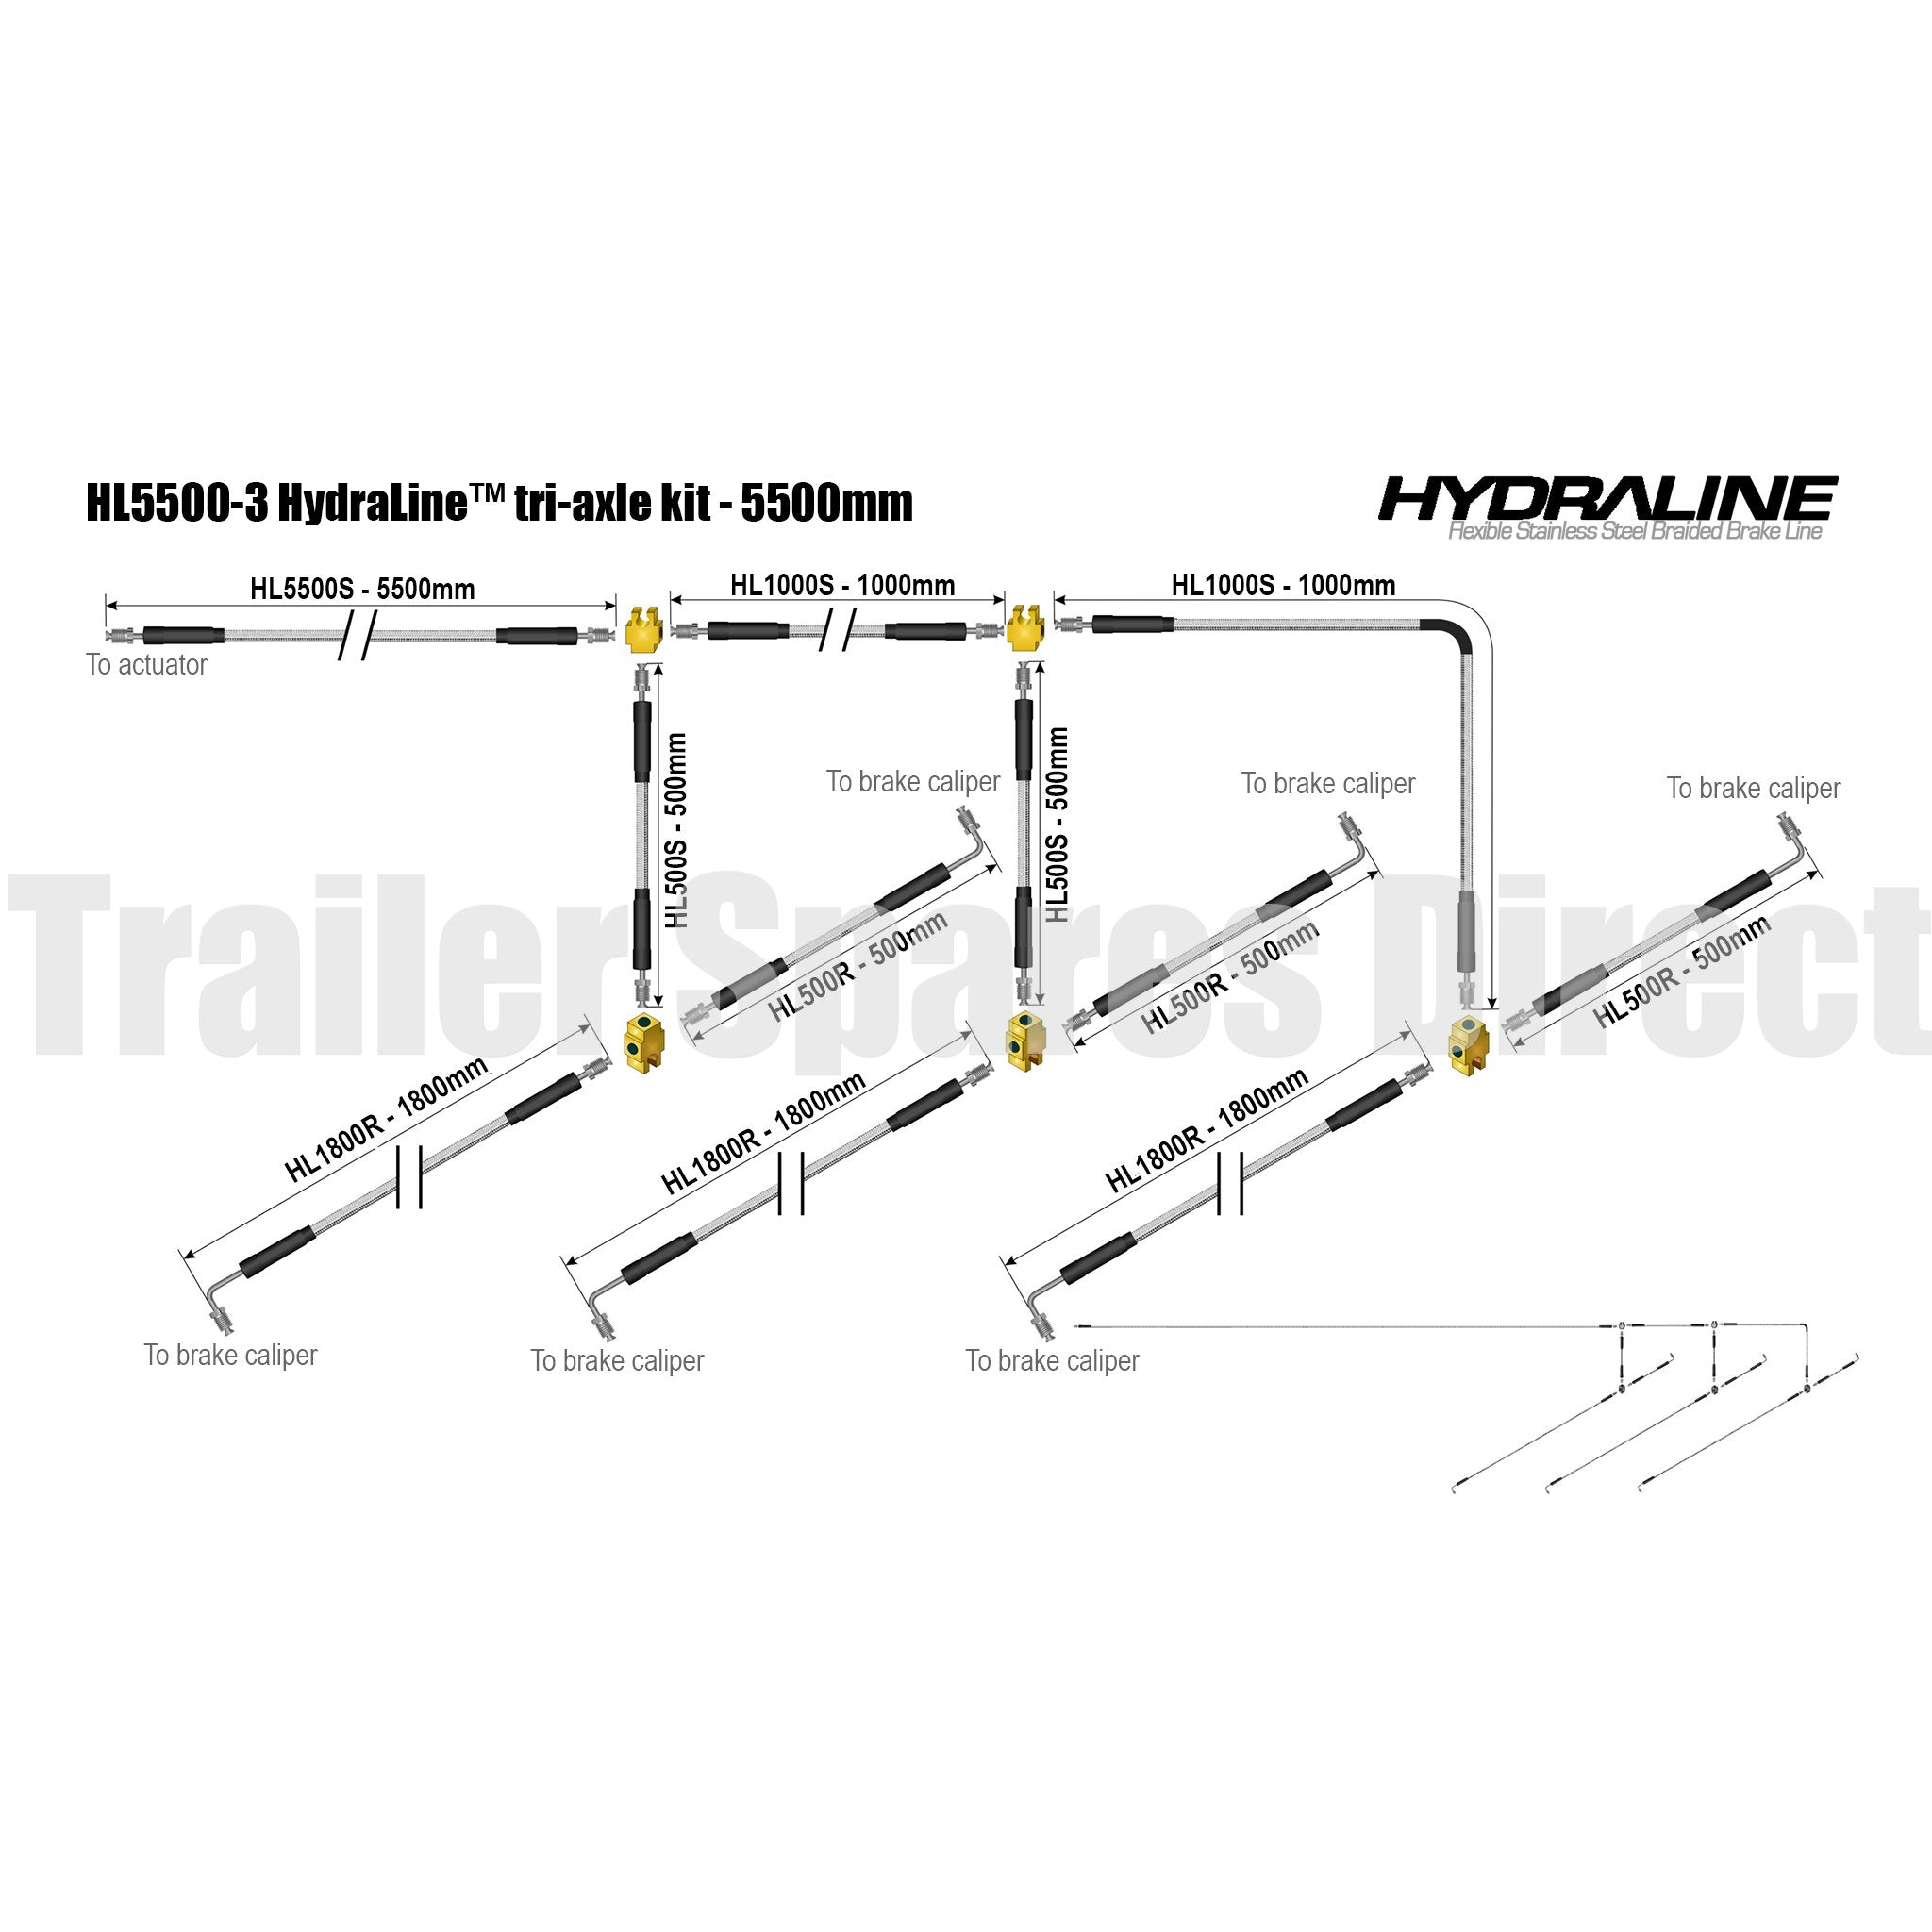 Hydraline kit 5500mm tri-axle diagram